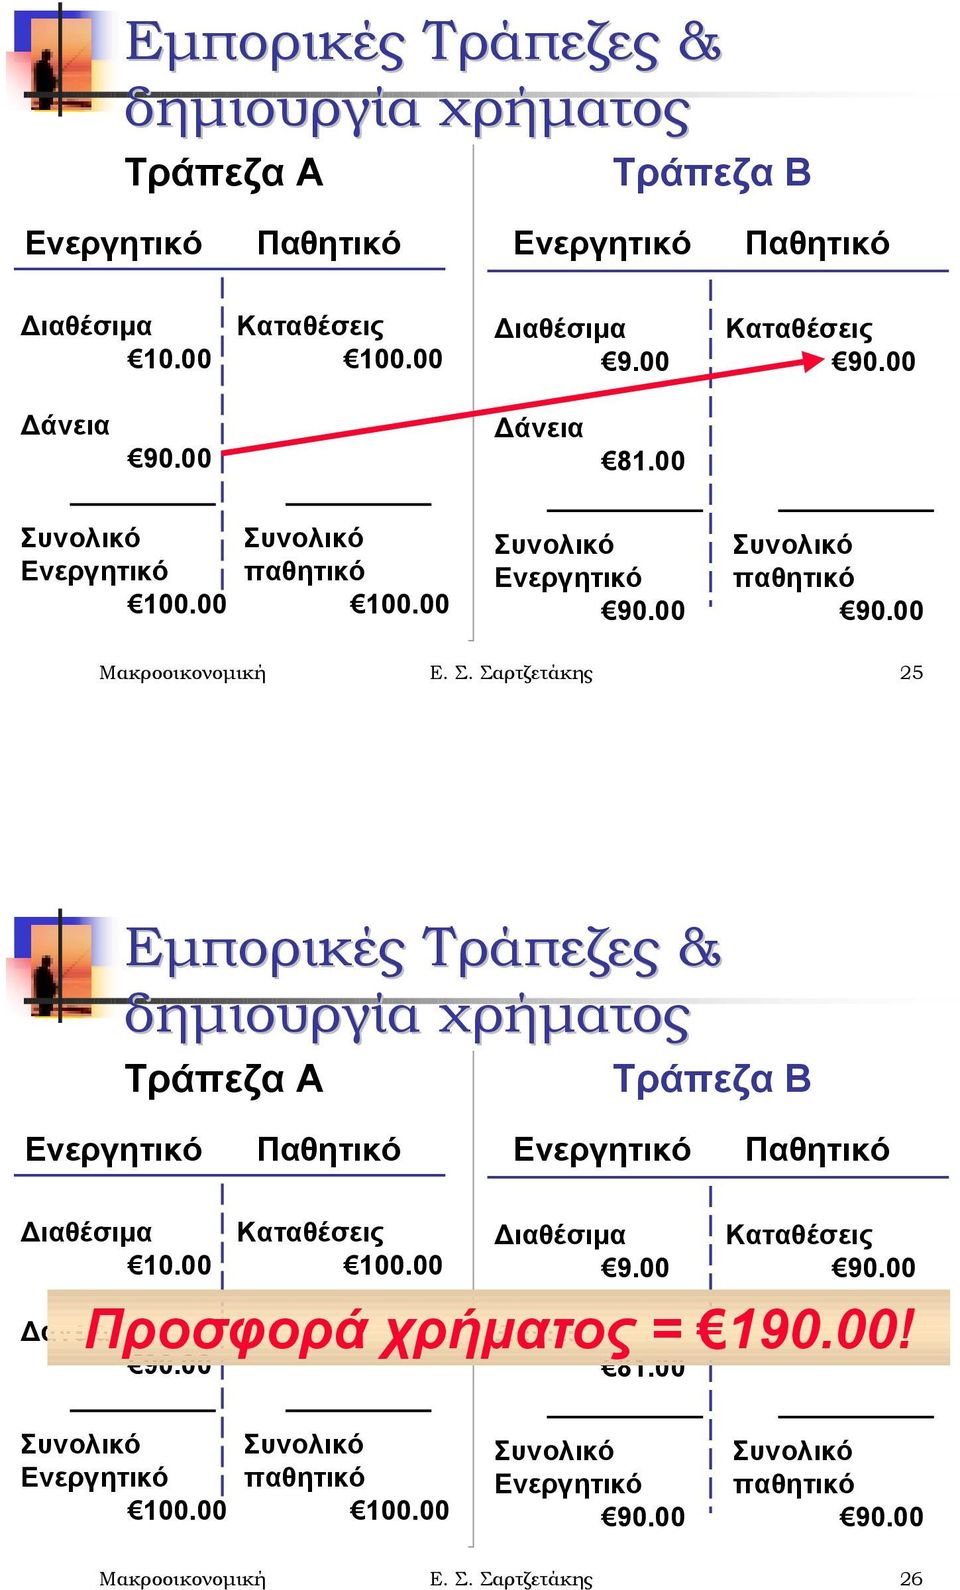 Σαρτζετάκης 25 00 Καταθέσεις Δάνεια Προσφορά χρήματος Δάνεια = 190.00! 81.